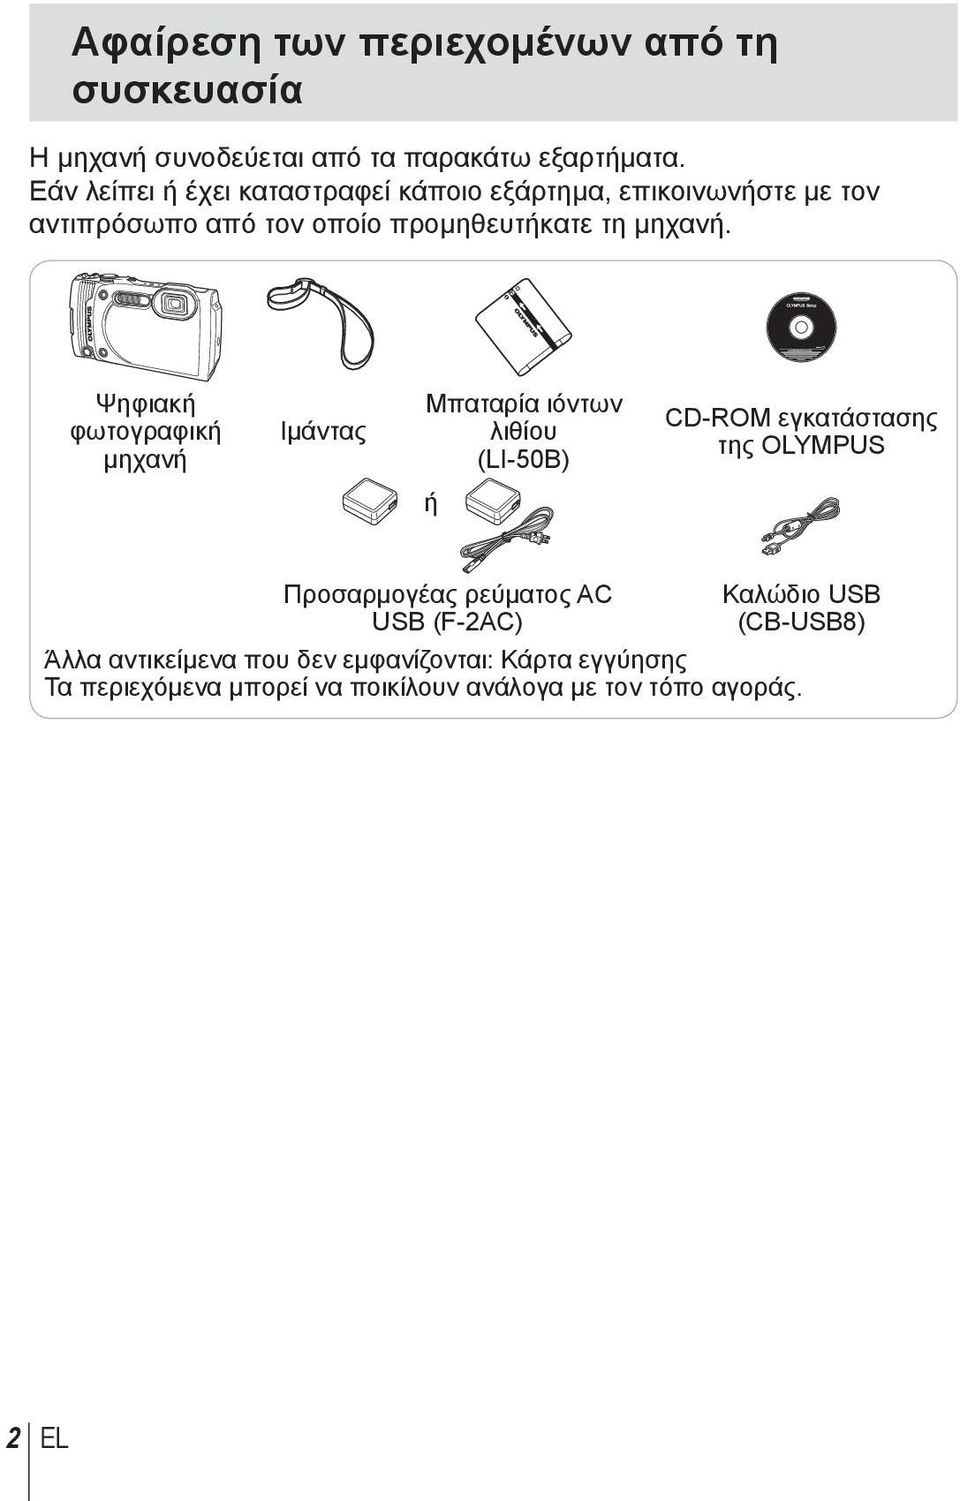 Ψηφιακή φωτογραφική μηχανή Ιμάντας Μπαταρία ιόντων λιθίου (LI-50B) CD-ROM εγκατάστασης της OLYMPUS ή Προσαρμογέας ρεύματος